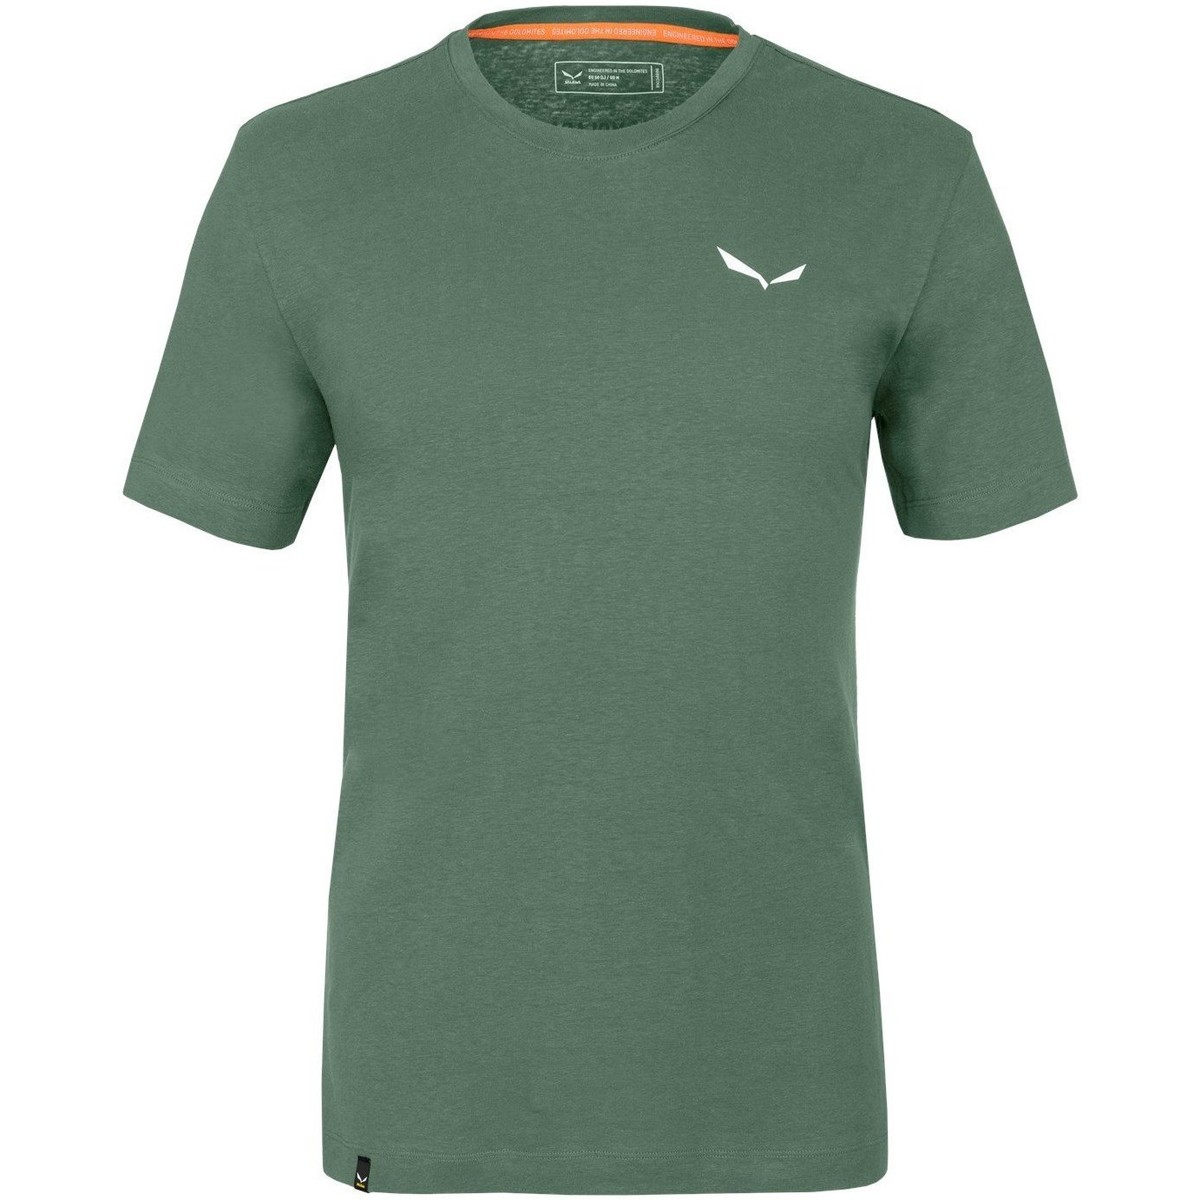 Υφασμάτινα Άνδρας T-shirts & Μπλούζες Salewa Pure Dolomites Hemp Men's T-Shirt 28329-5320 Green